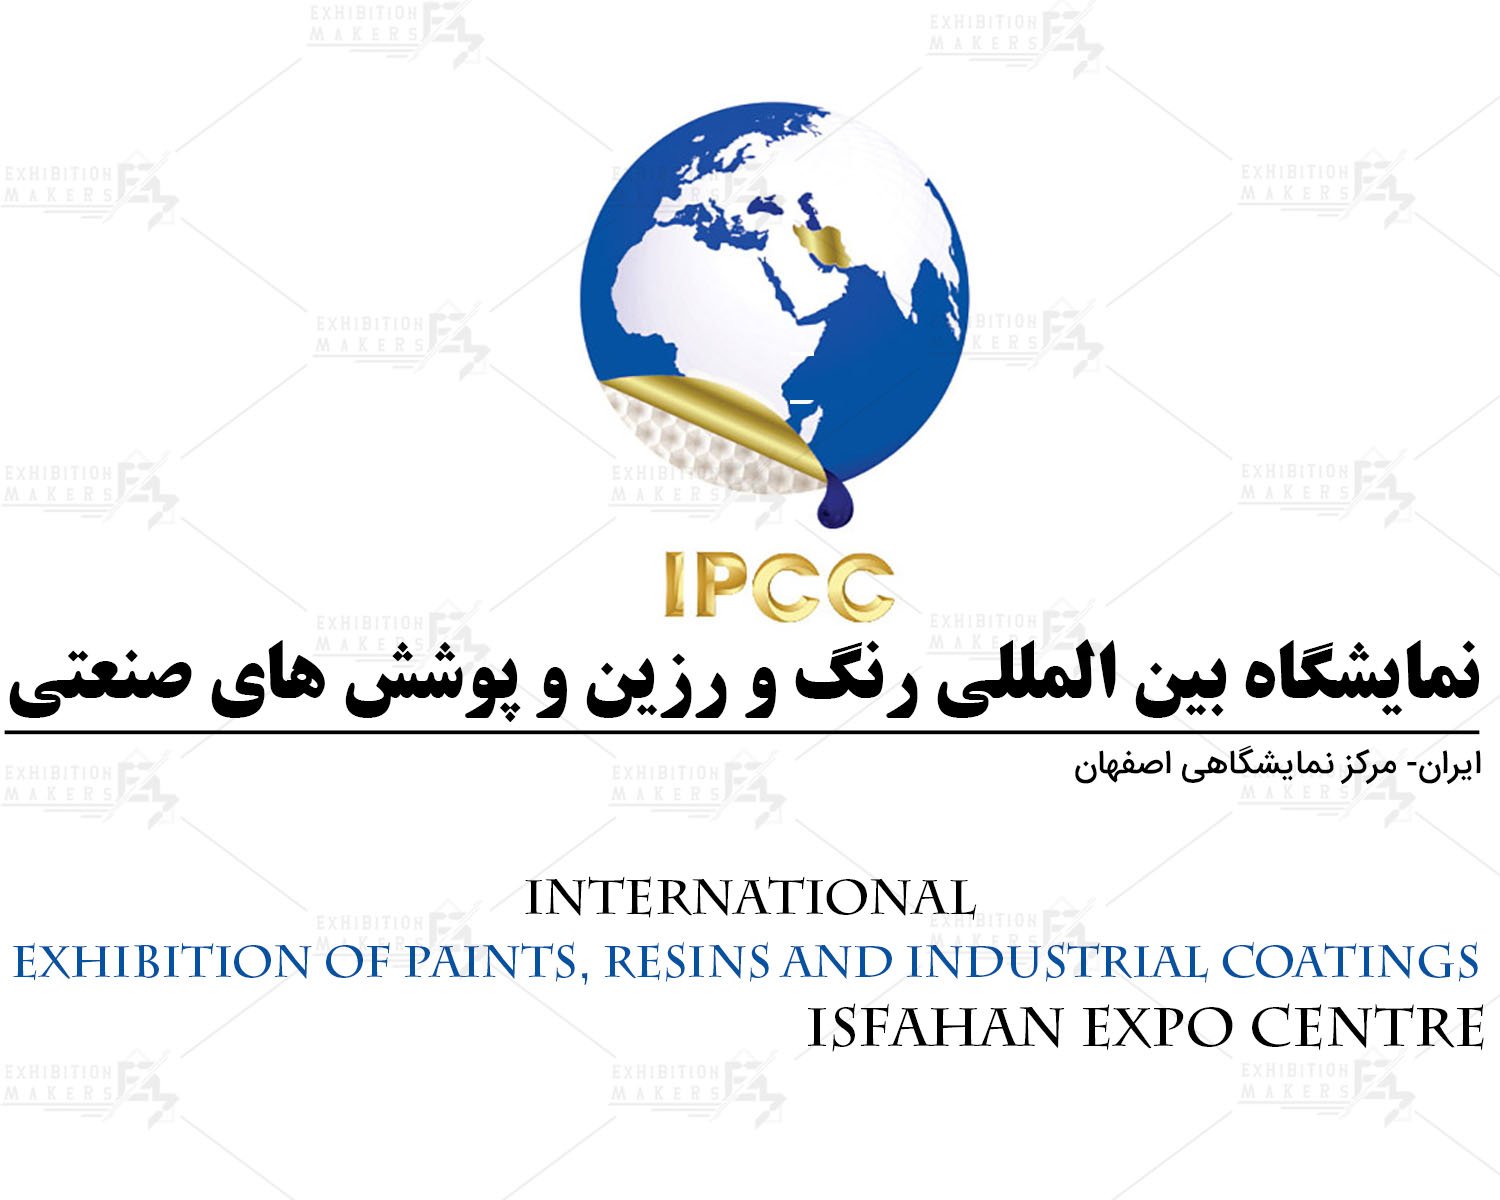 نمایشگاه بین المللی رنگ و رزین و پوشش های صنعتی اصفهان